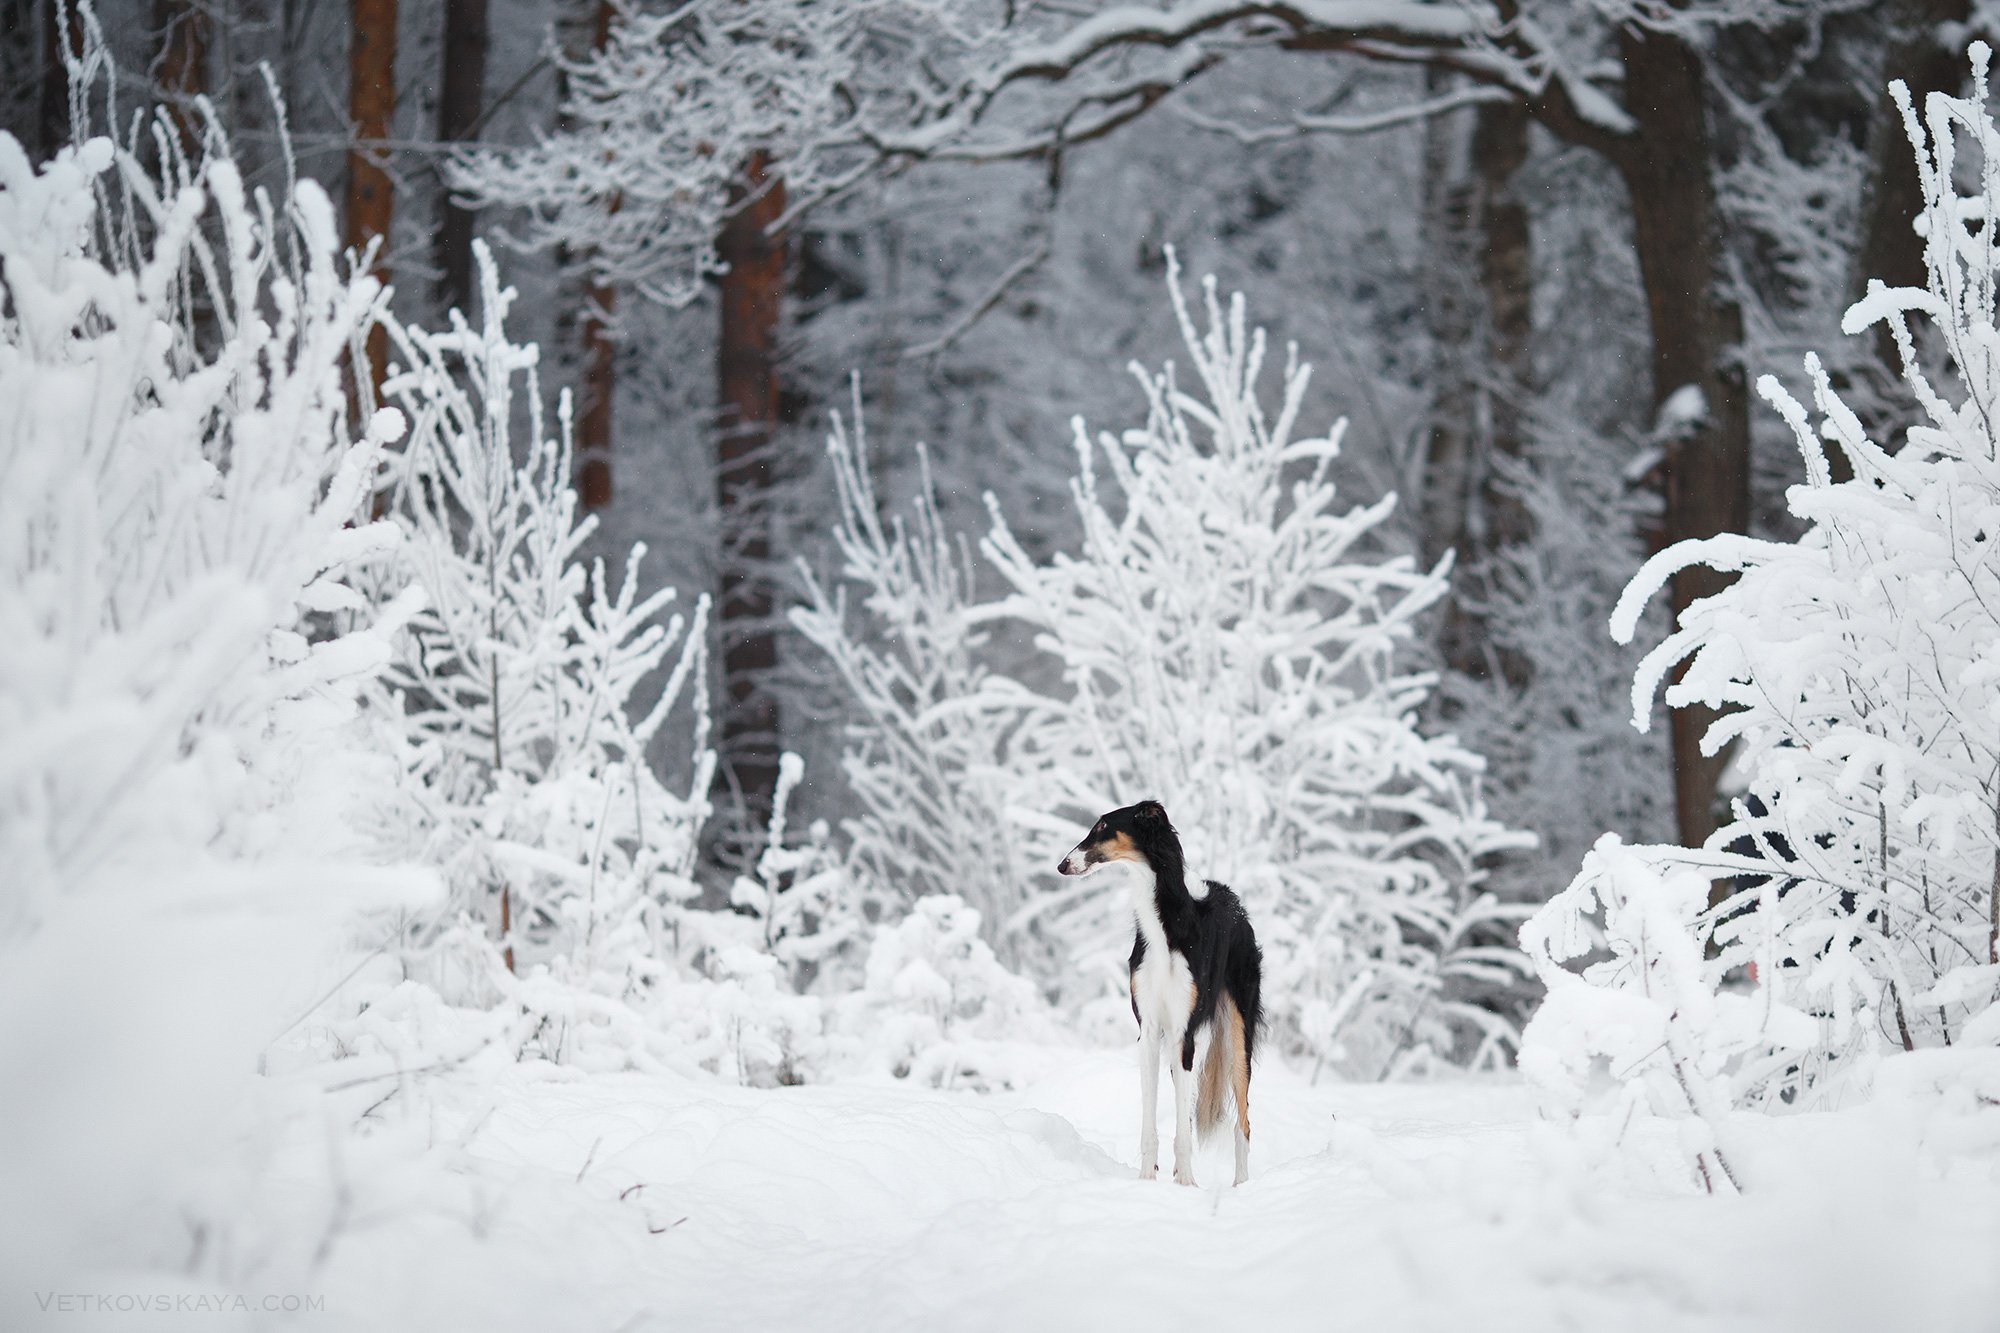 собака, лес, снегопад, поле, борзая, русская псовая, зима, Анастасия Ветковская